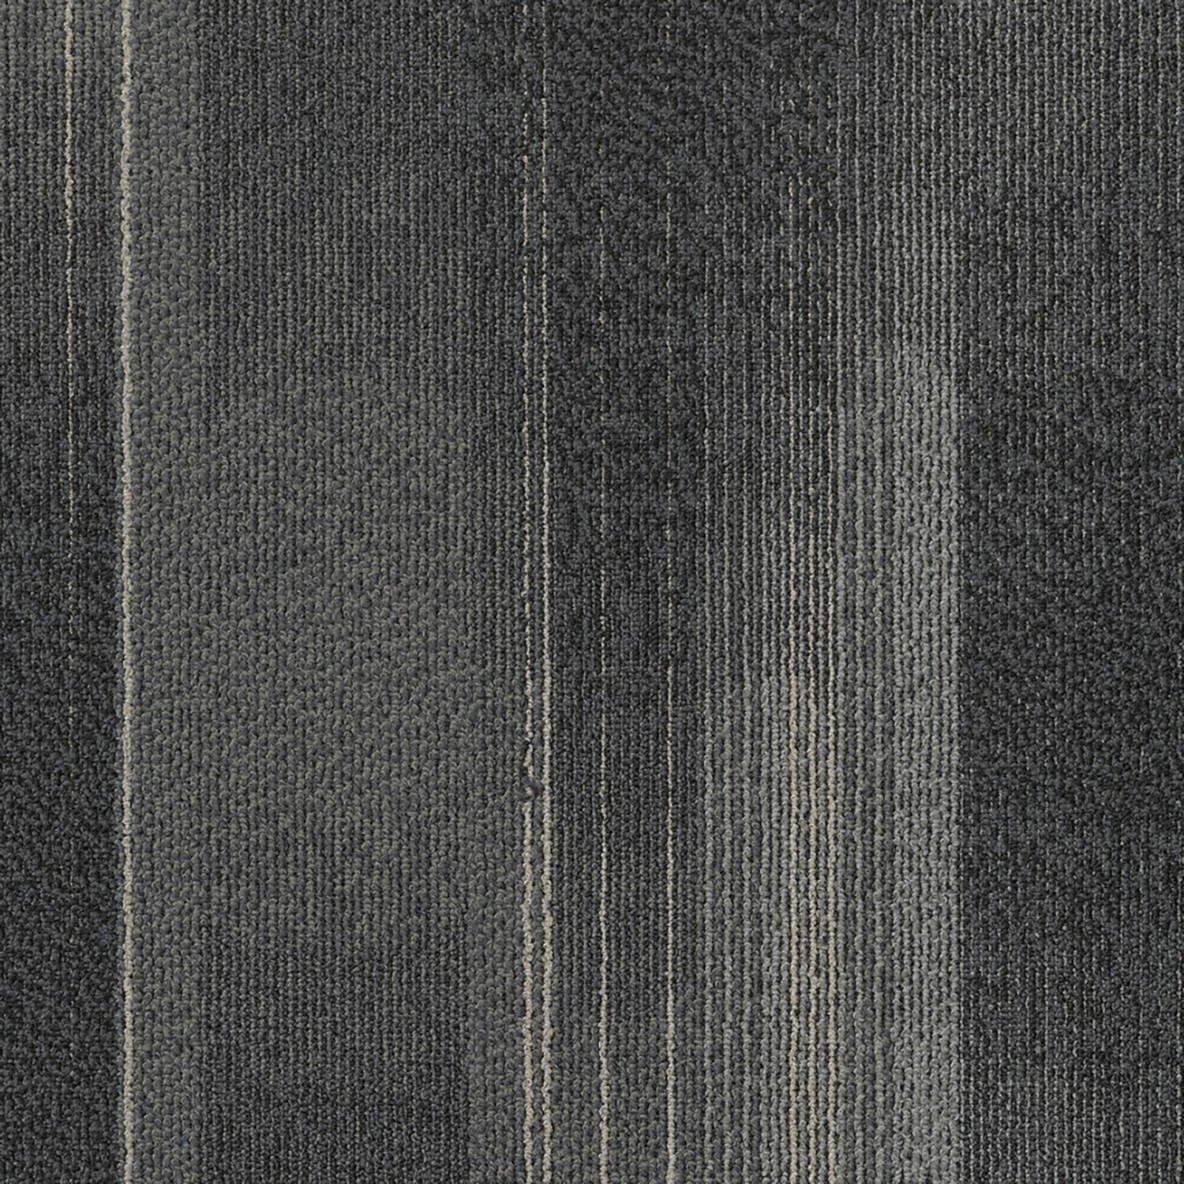 Diversions Commercial Carpet Tile .42 Inch x 50x50 cm per Tile Carbon color close up